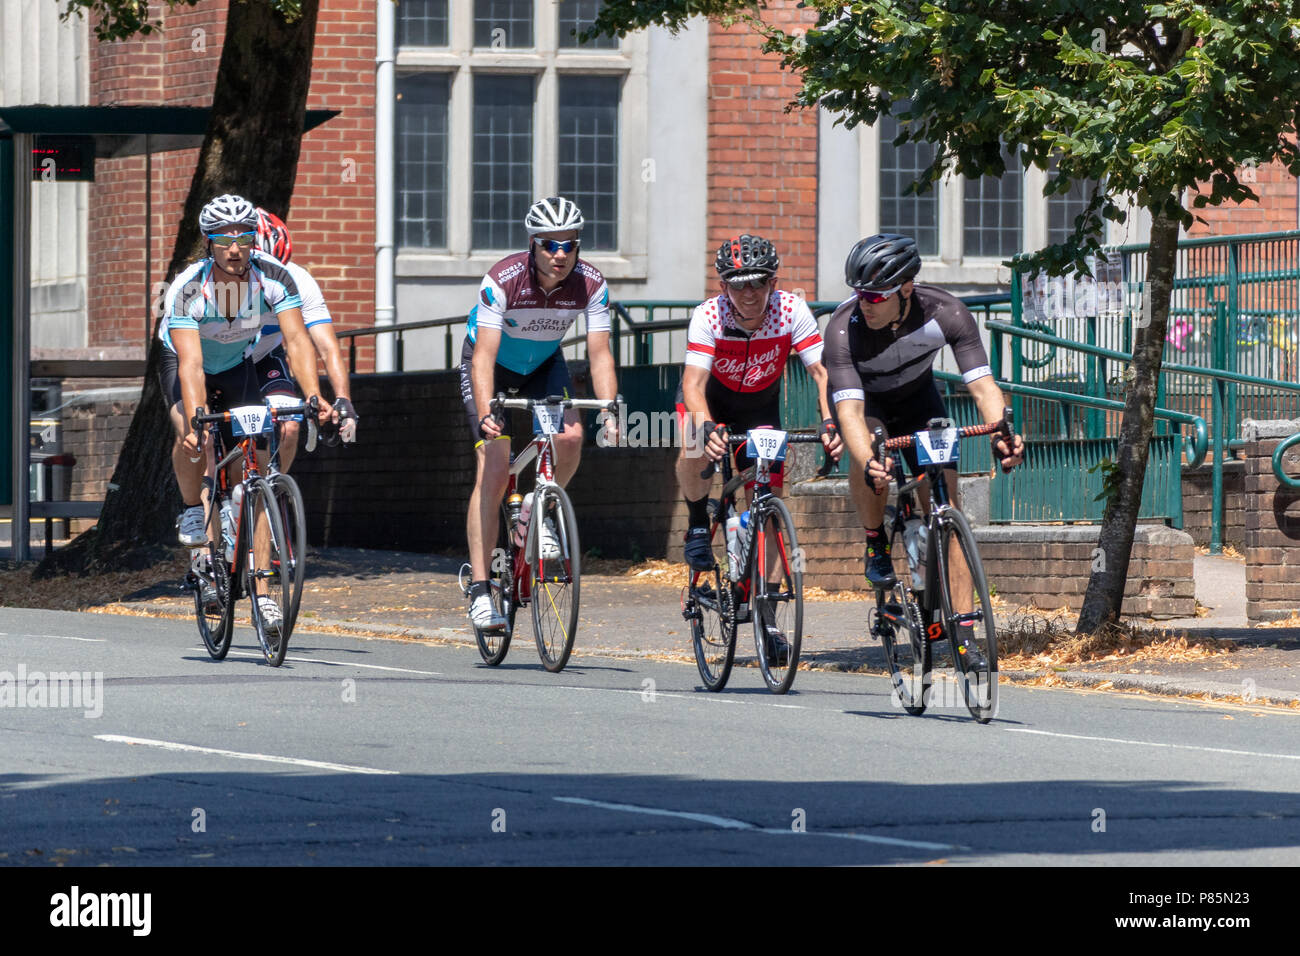 CARDIFF, WALES/UK - 8 juillet : Les cyclistes participant à l'événement cycliste Velothon à Cardiff au Pays de Galles, le 8 juillet 2018. Cinq personnes non identifiées Banque D'Images